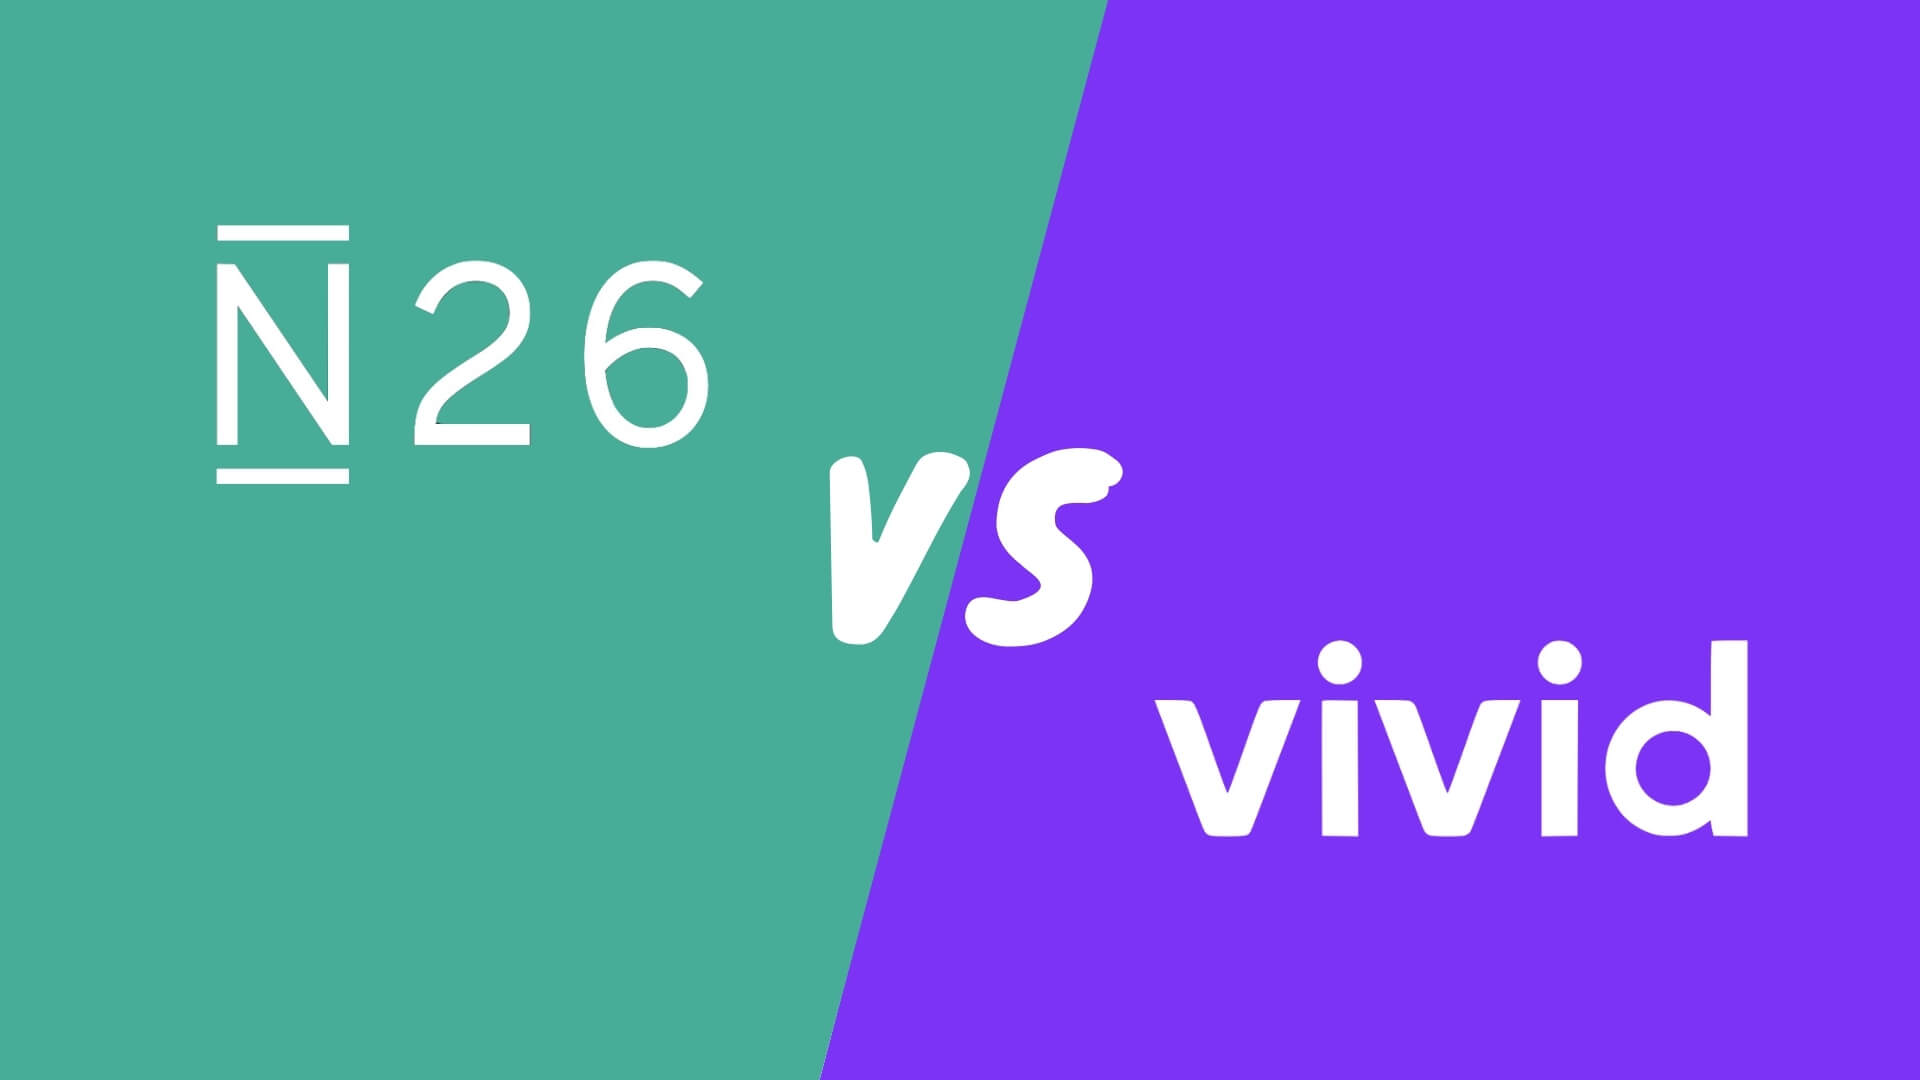 N26 vs Vivid Money Girokonto Kreditkarte Vergleich Bewertung Test Erfahrungsbericht Erfahrungen